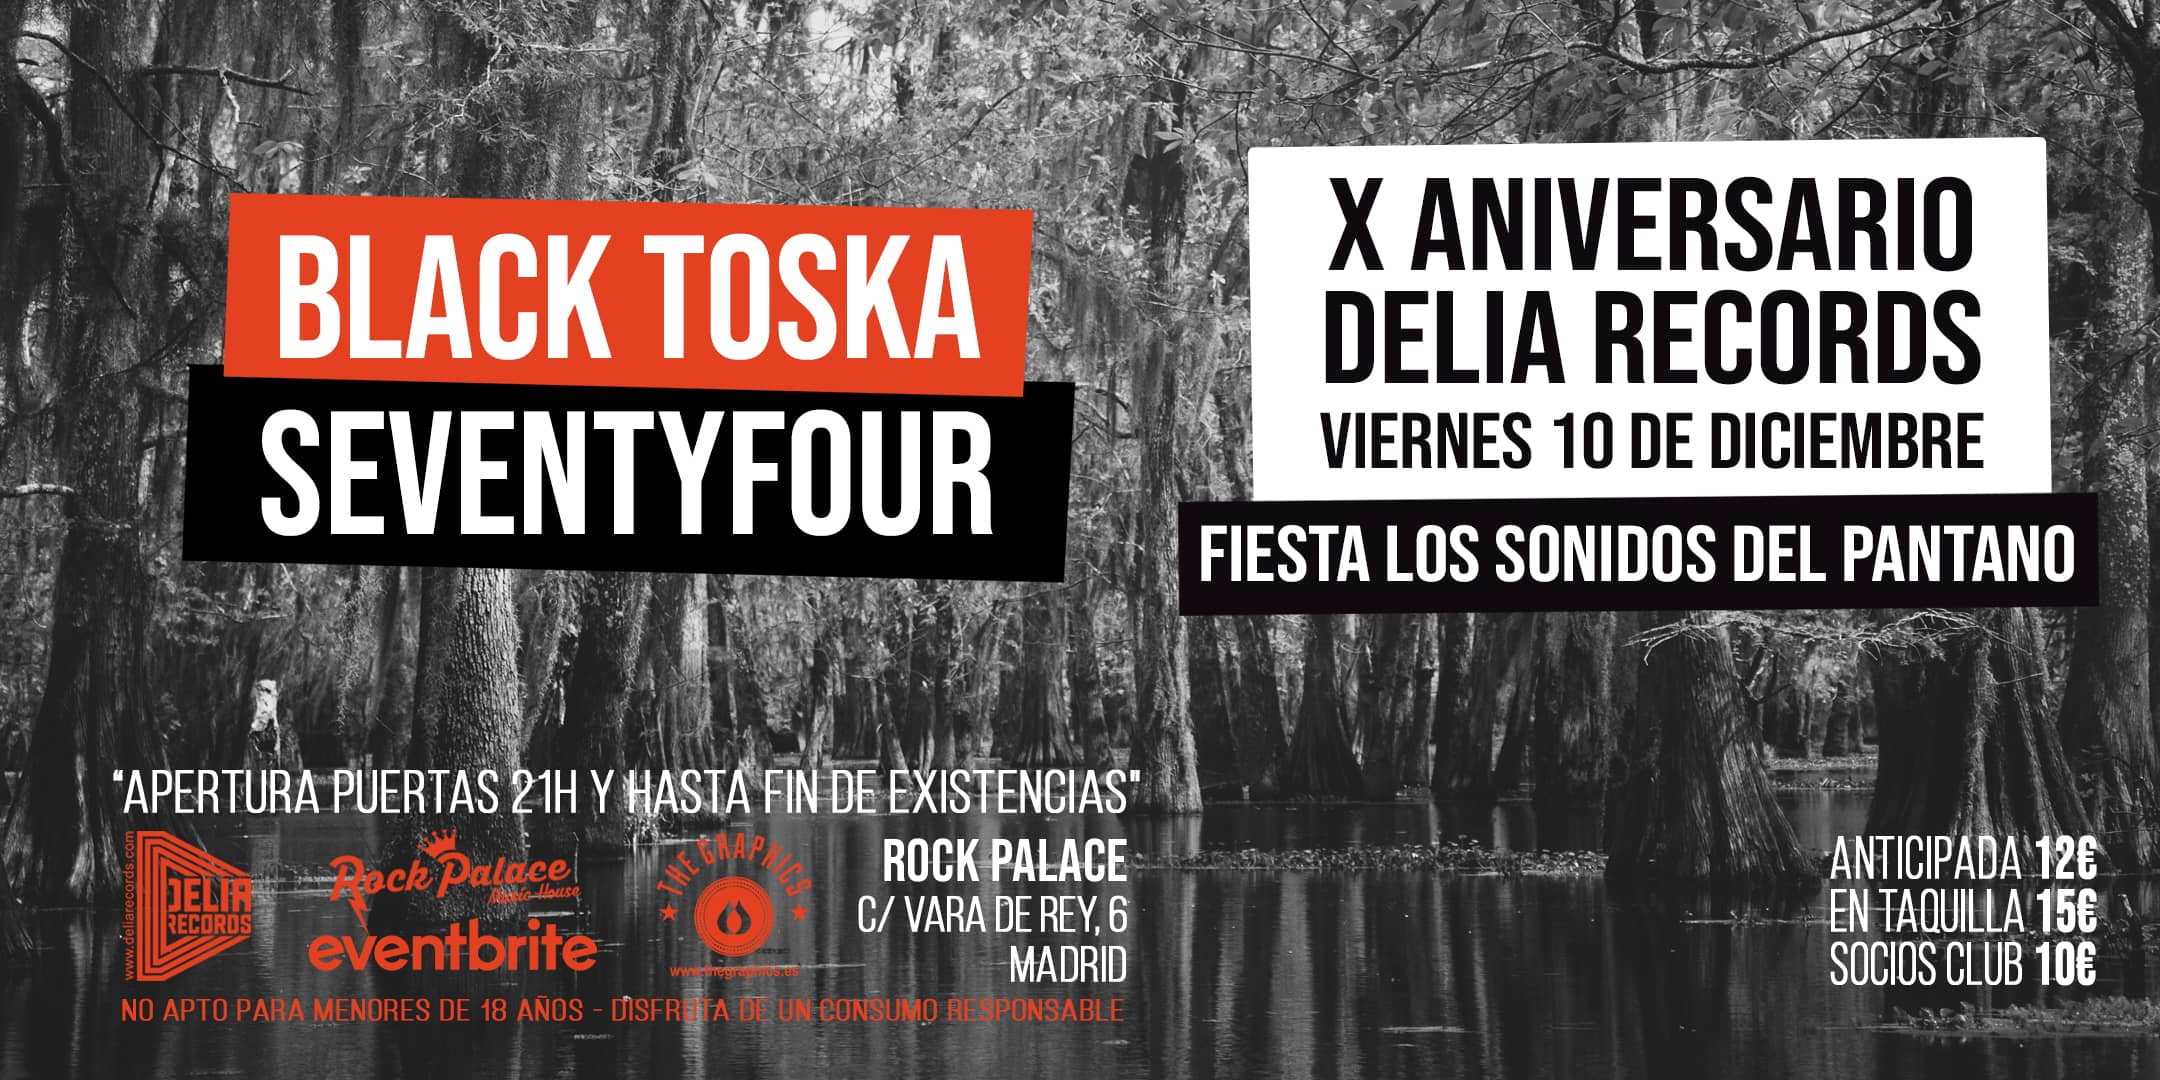 X Aniversario Delia Records [Fiesta Sonidos del Pantano en Madrid @ Rock Palace] Black Toska & Seventyfour